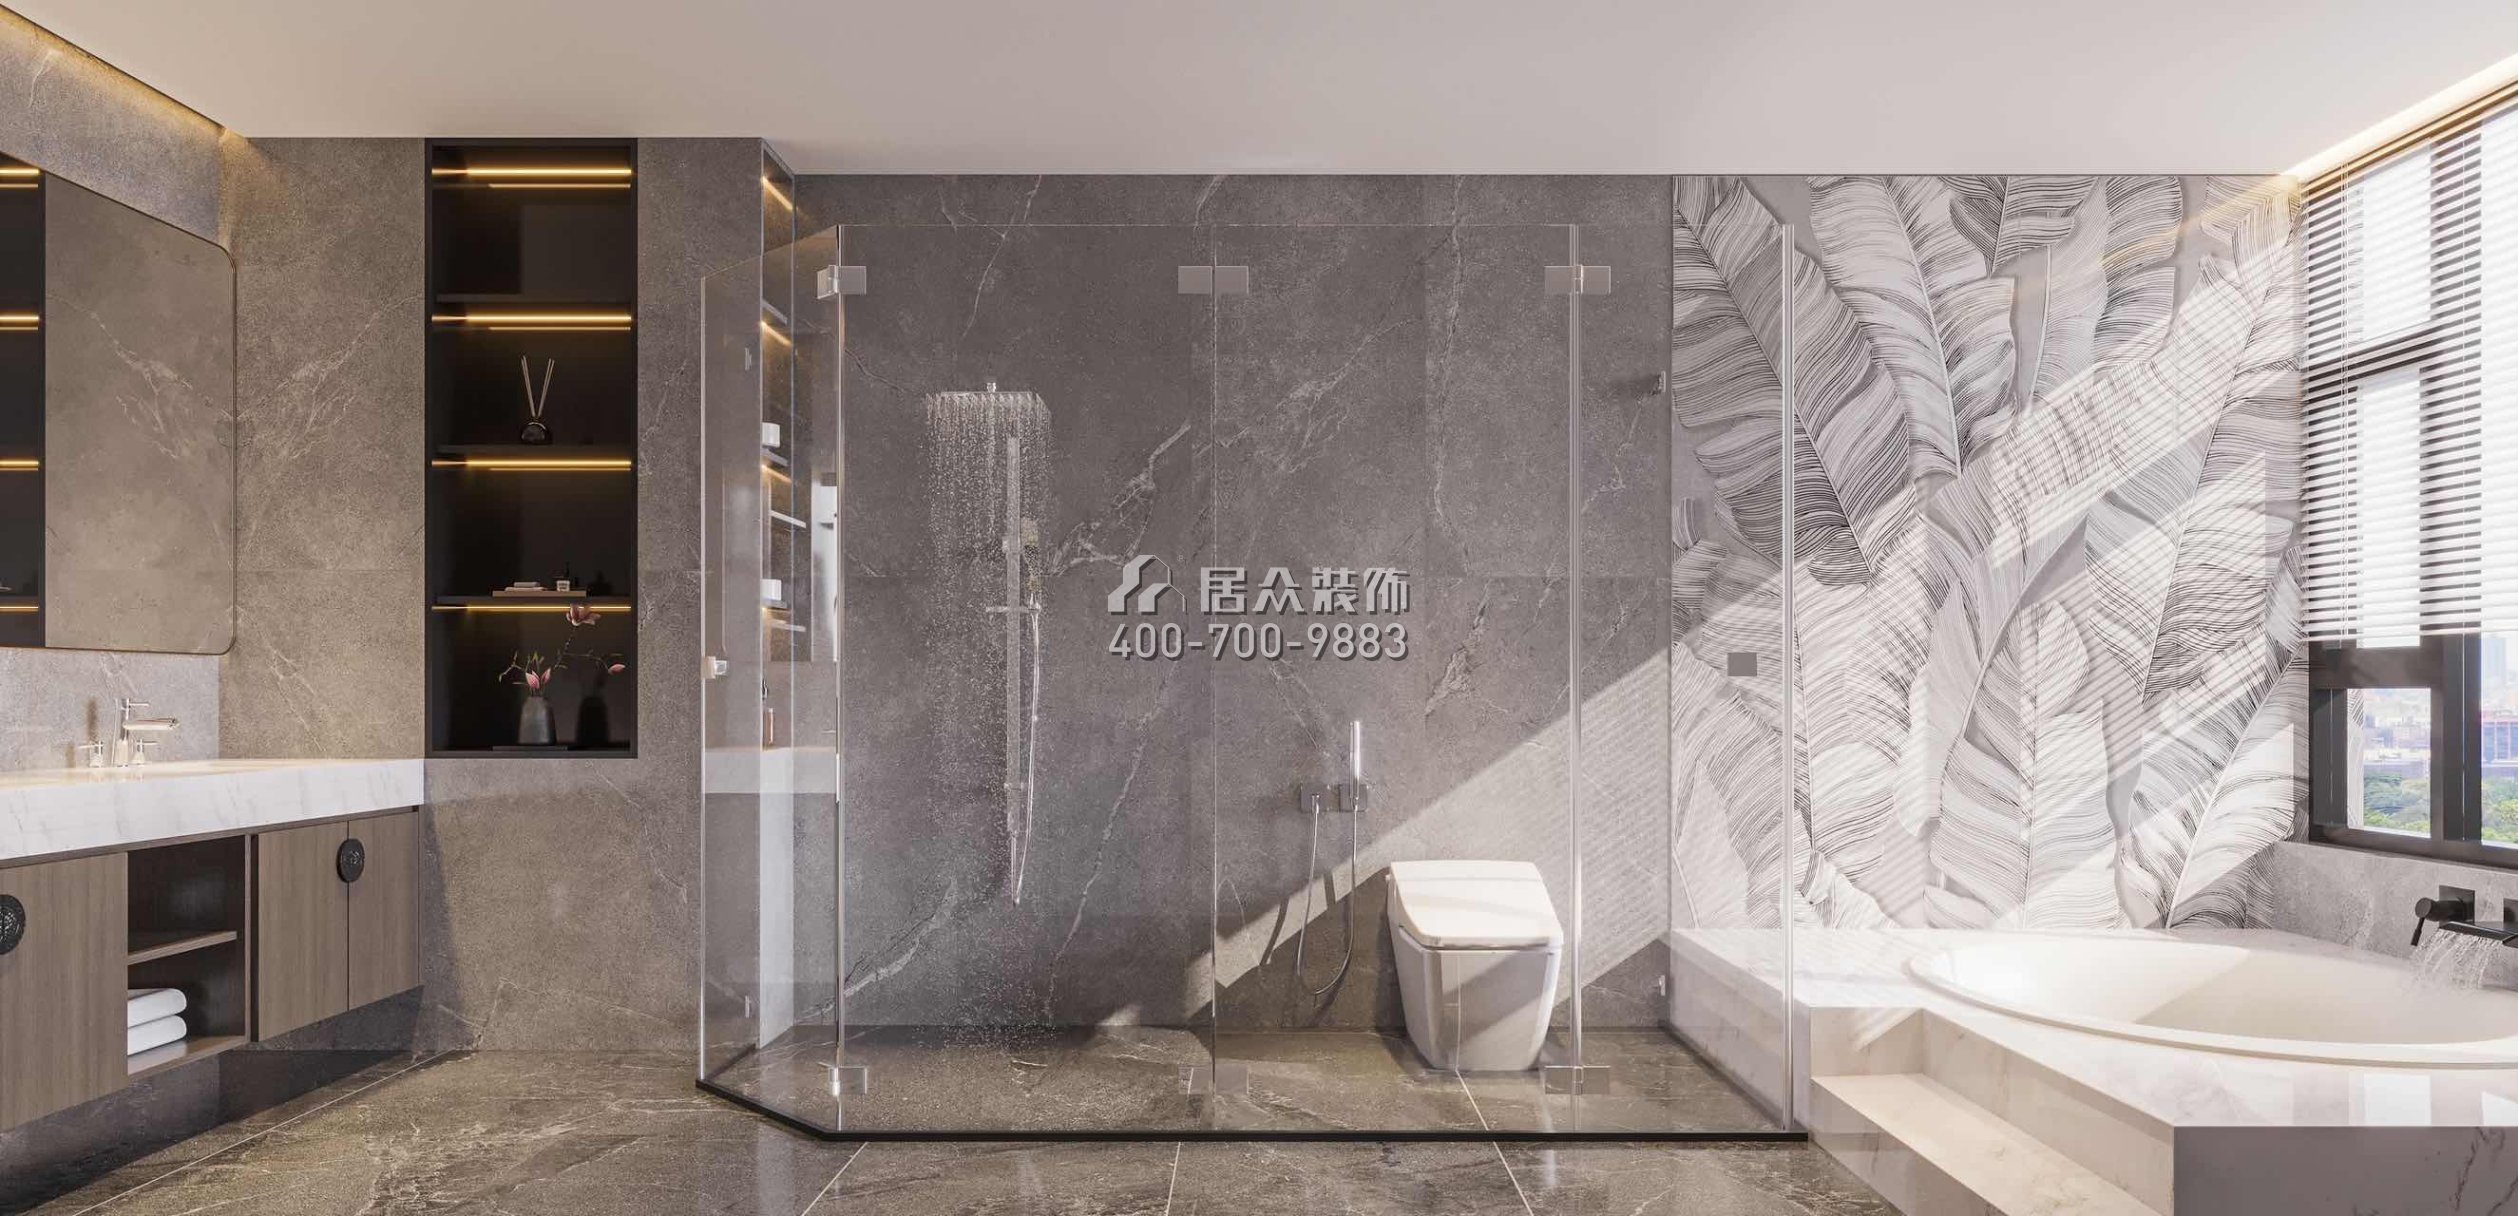 中海汤泉450平方米中式风格别墅户型卫生间装修效果图